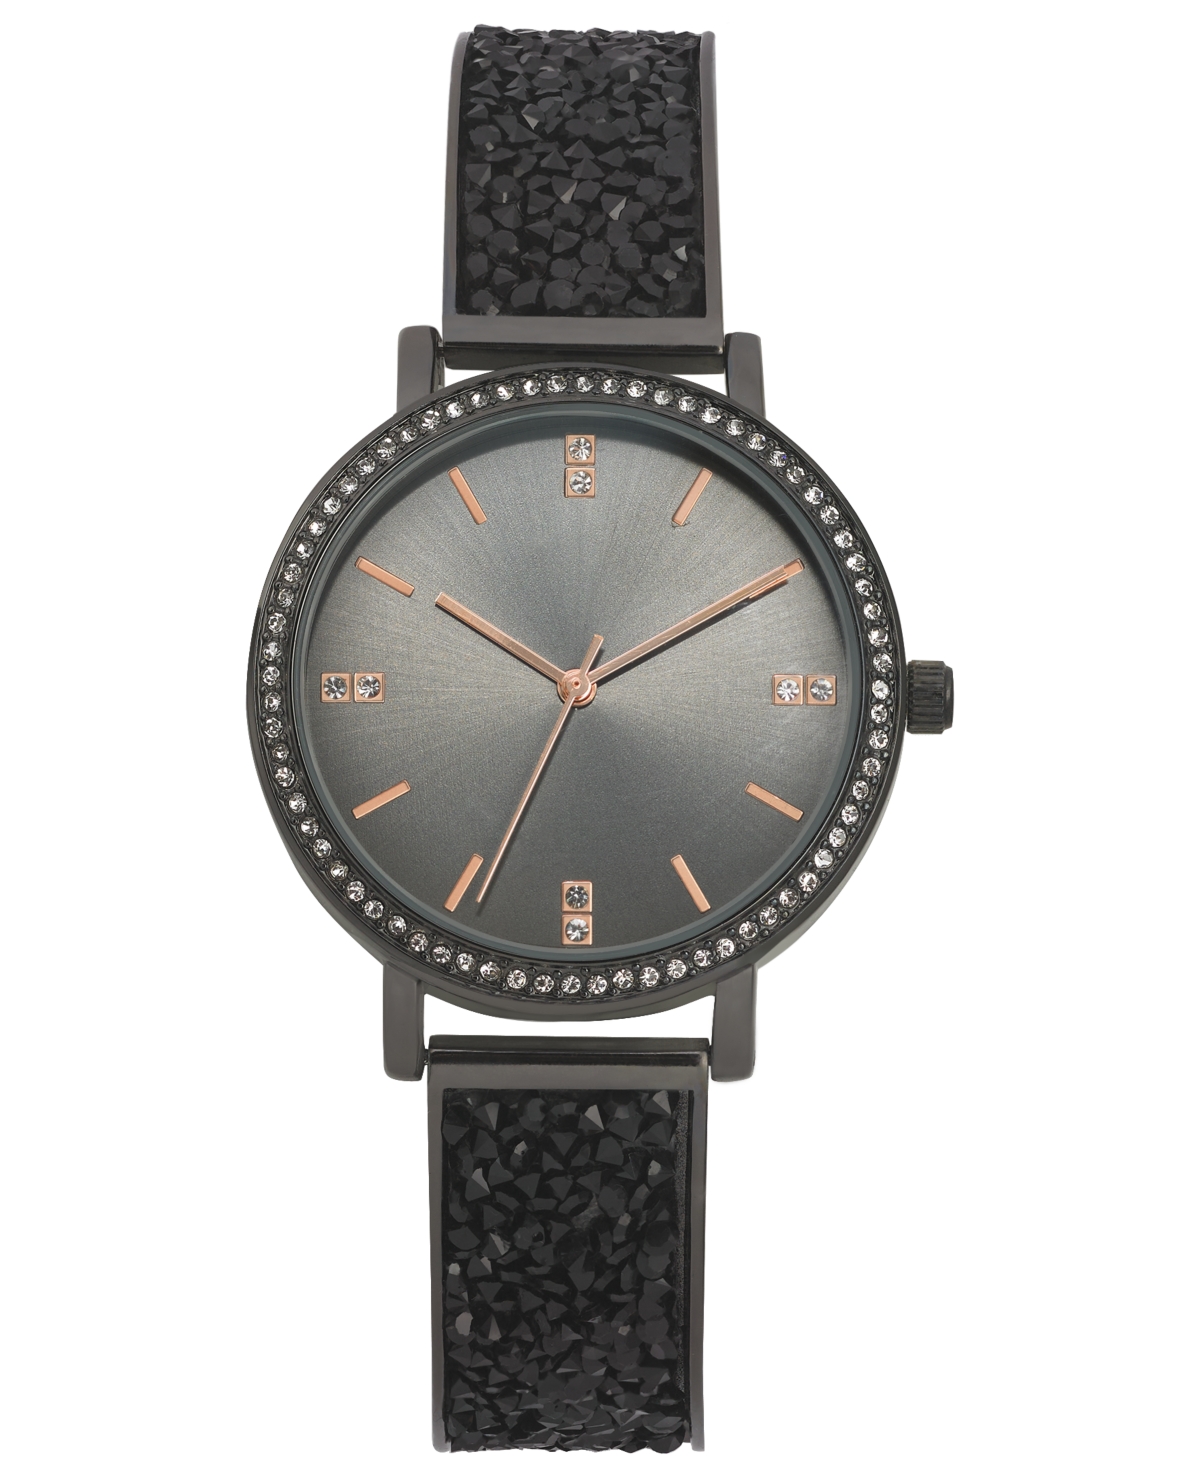 Women's Druzy Stone Black-Tone Bracelet Watch 36mm, Created for Macy's - Black